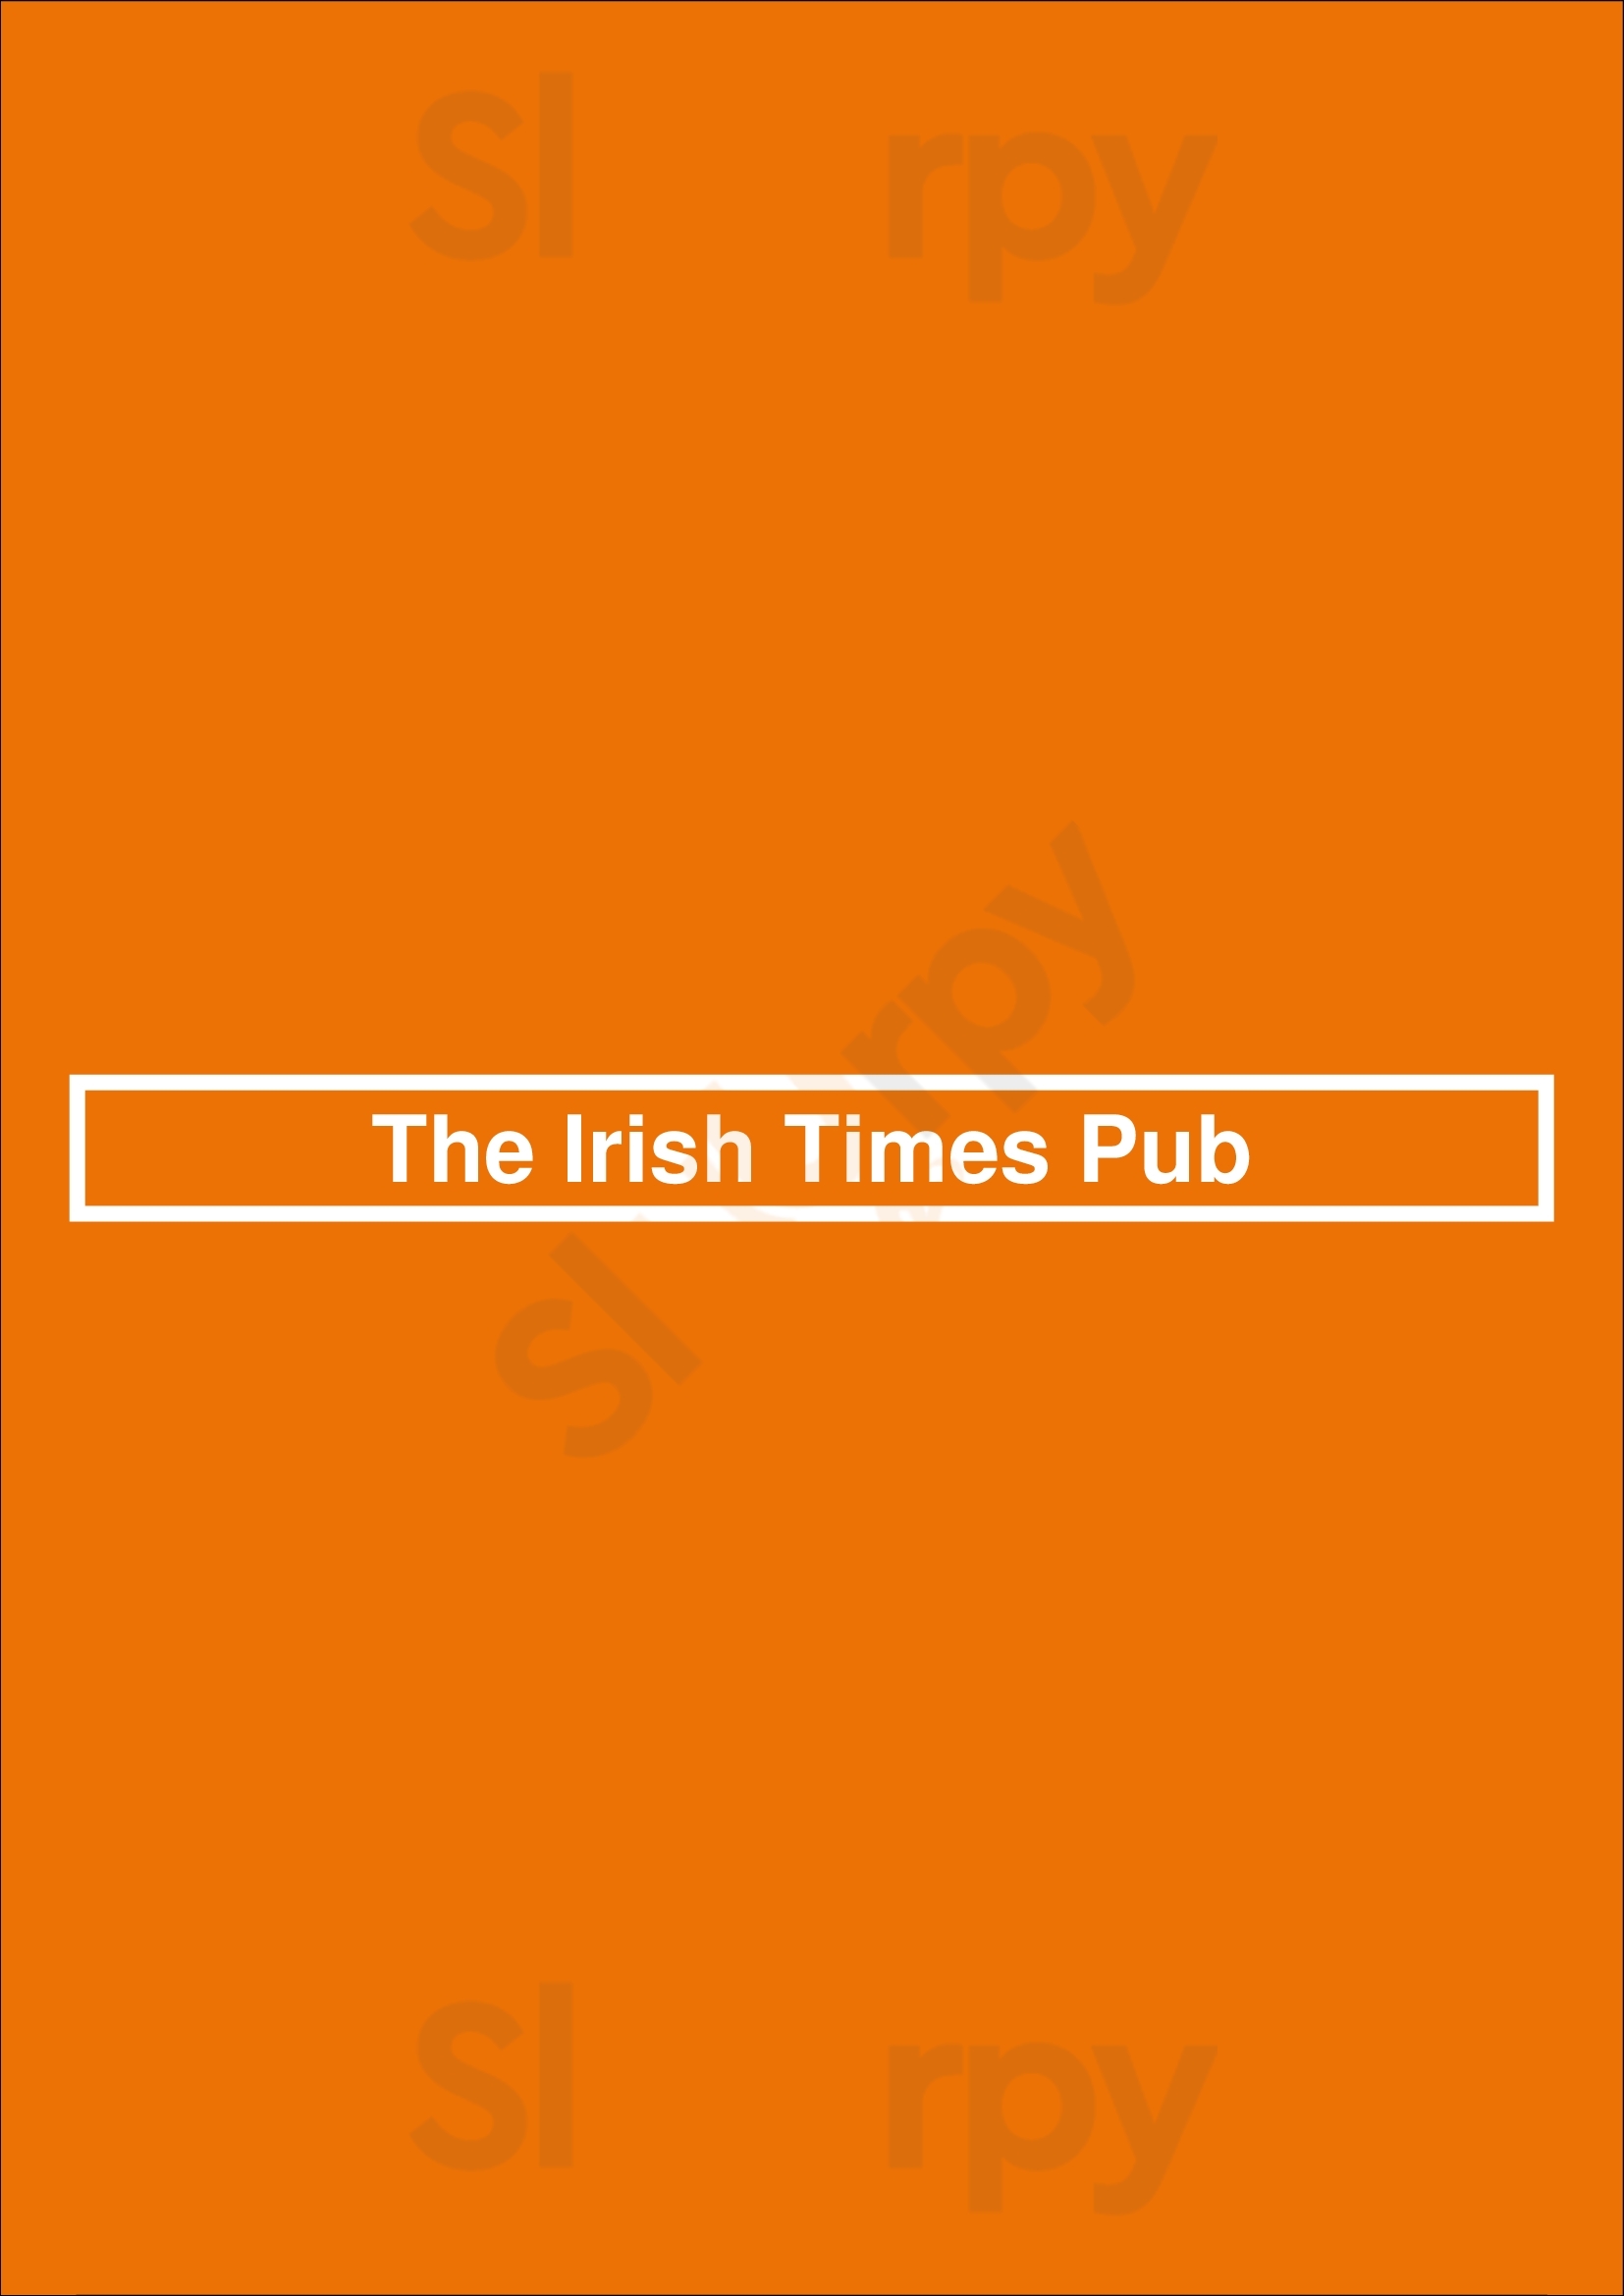 The Irish Times Pub Melbourne Menu - 1